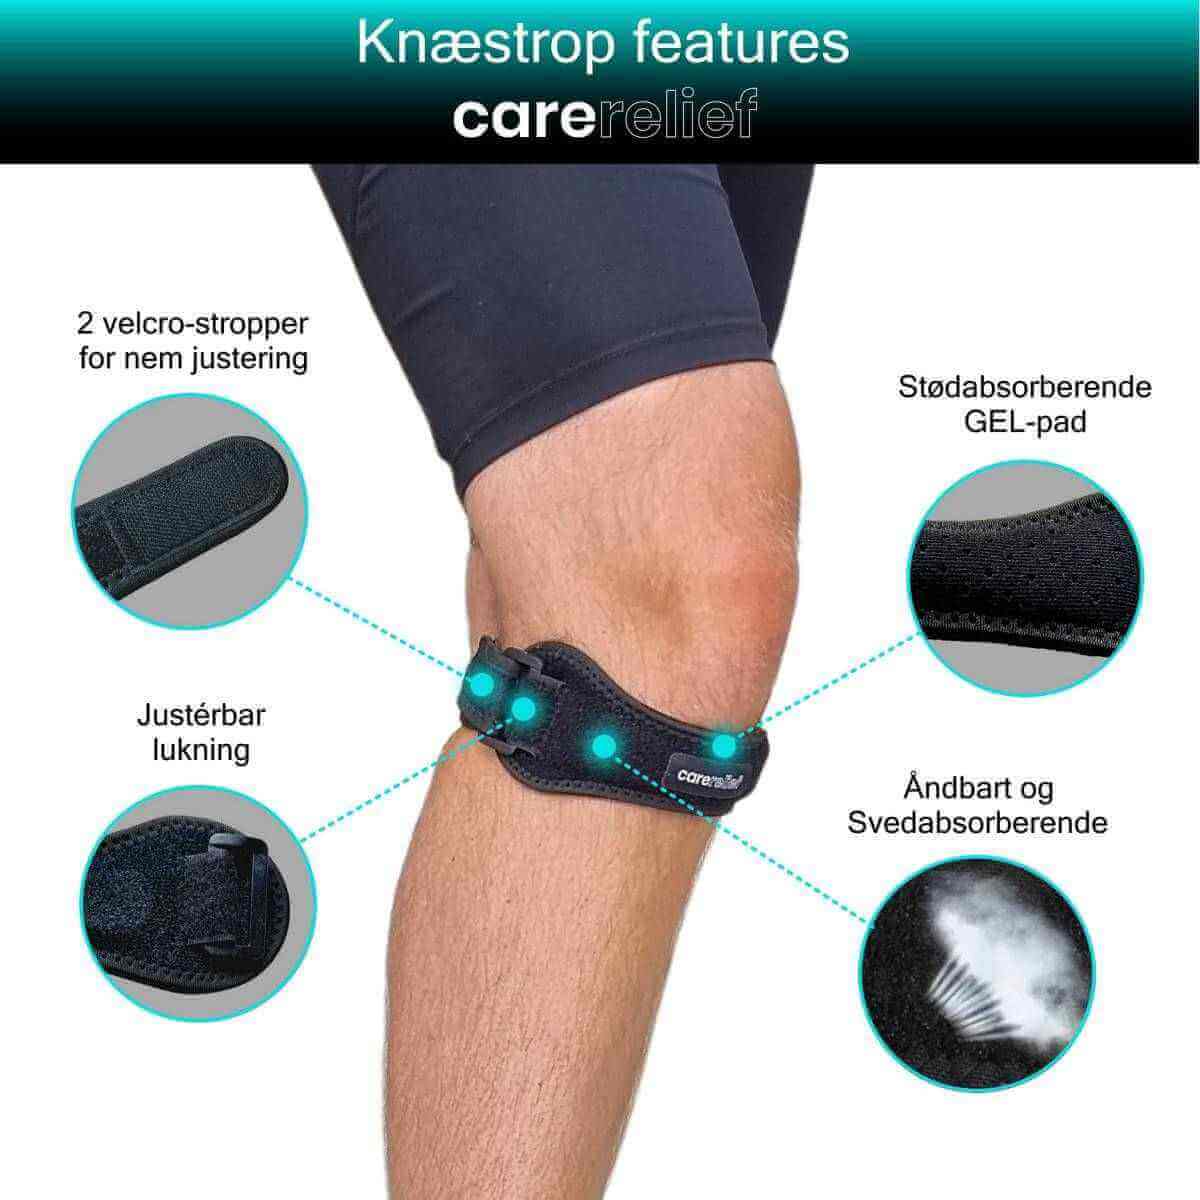 Køb knæstrop til schlatter, springer og løber knæ. Knæbind KN40 justeres nemt med stropper. Gel-puden lindrer smerter i senen under knæskallen og aflaster knæet efter skader, ved sport og i hverdagen.